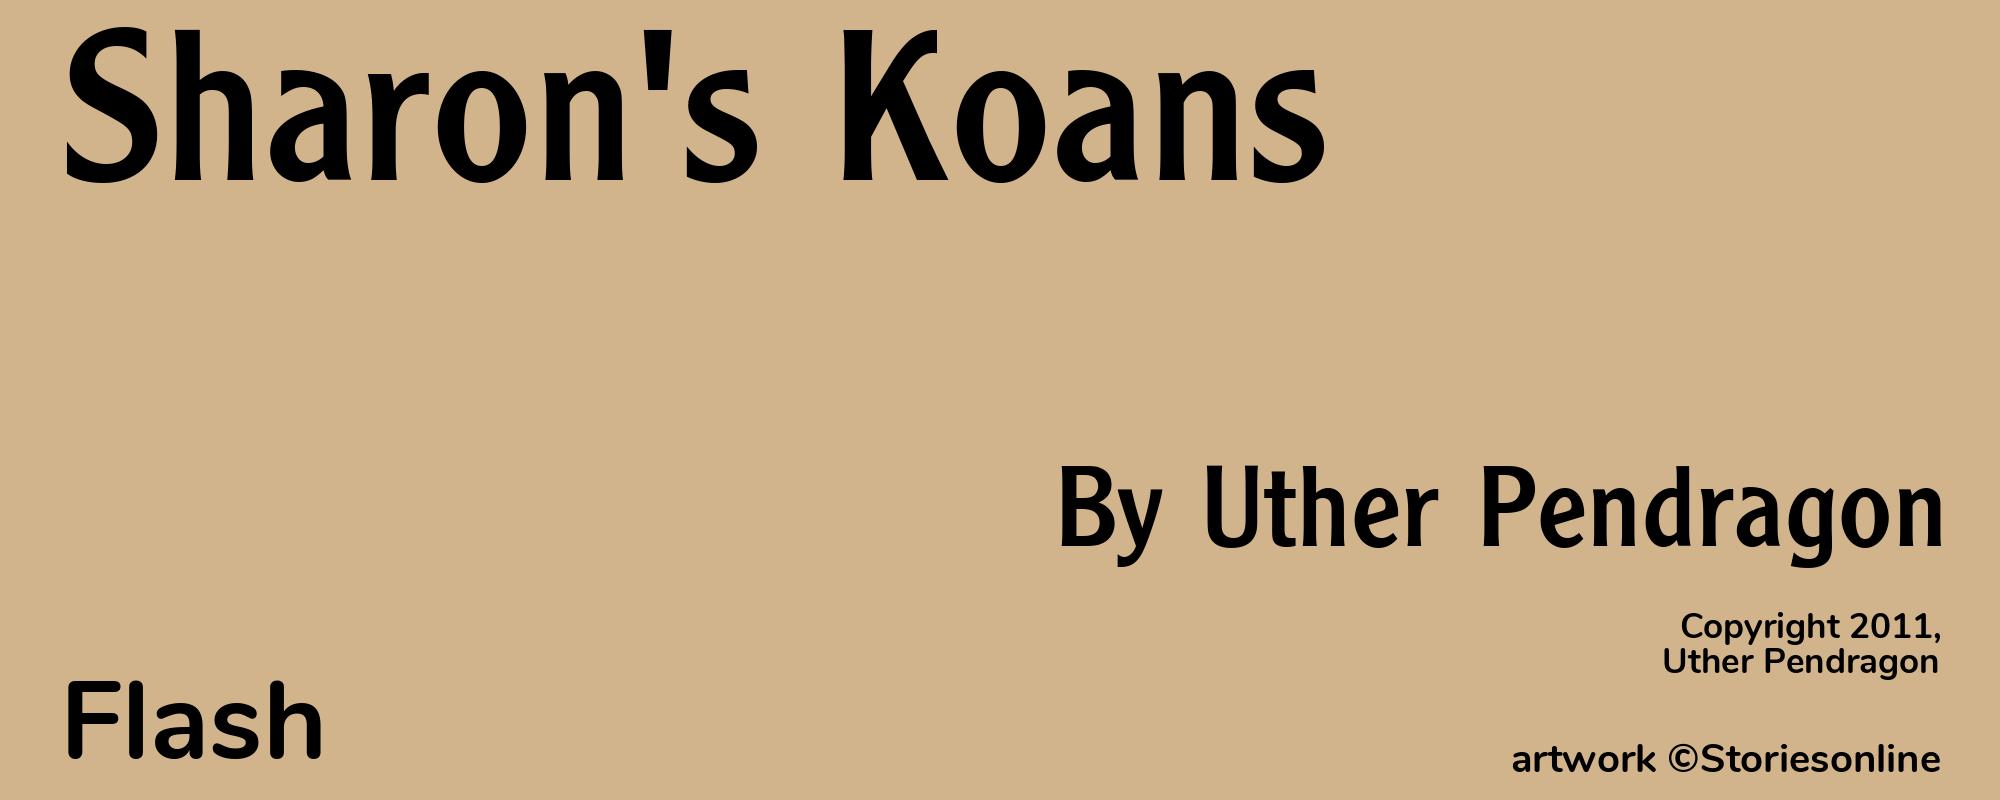 Sharon's Koans - Cover